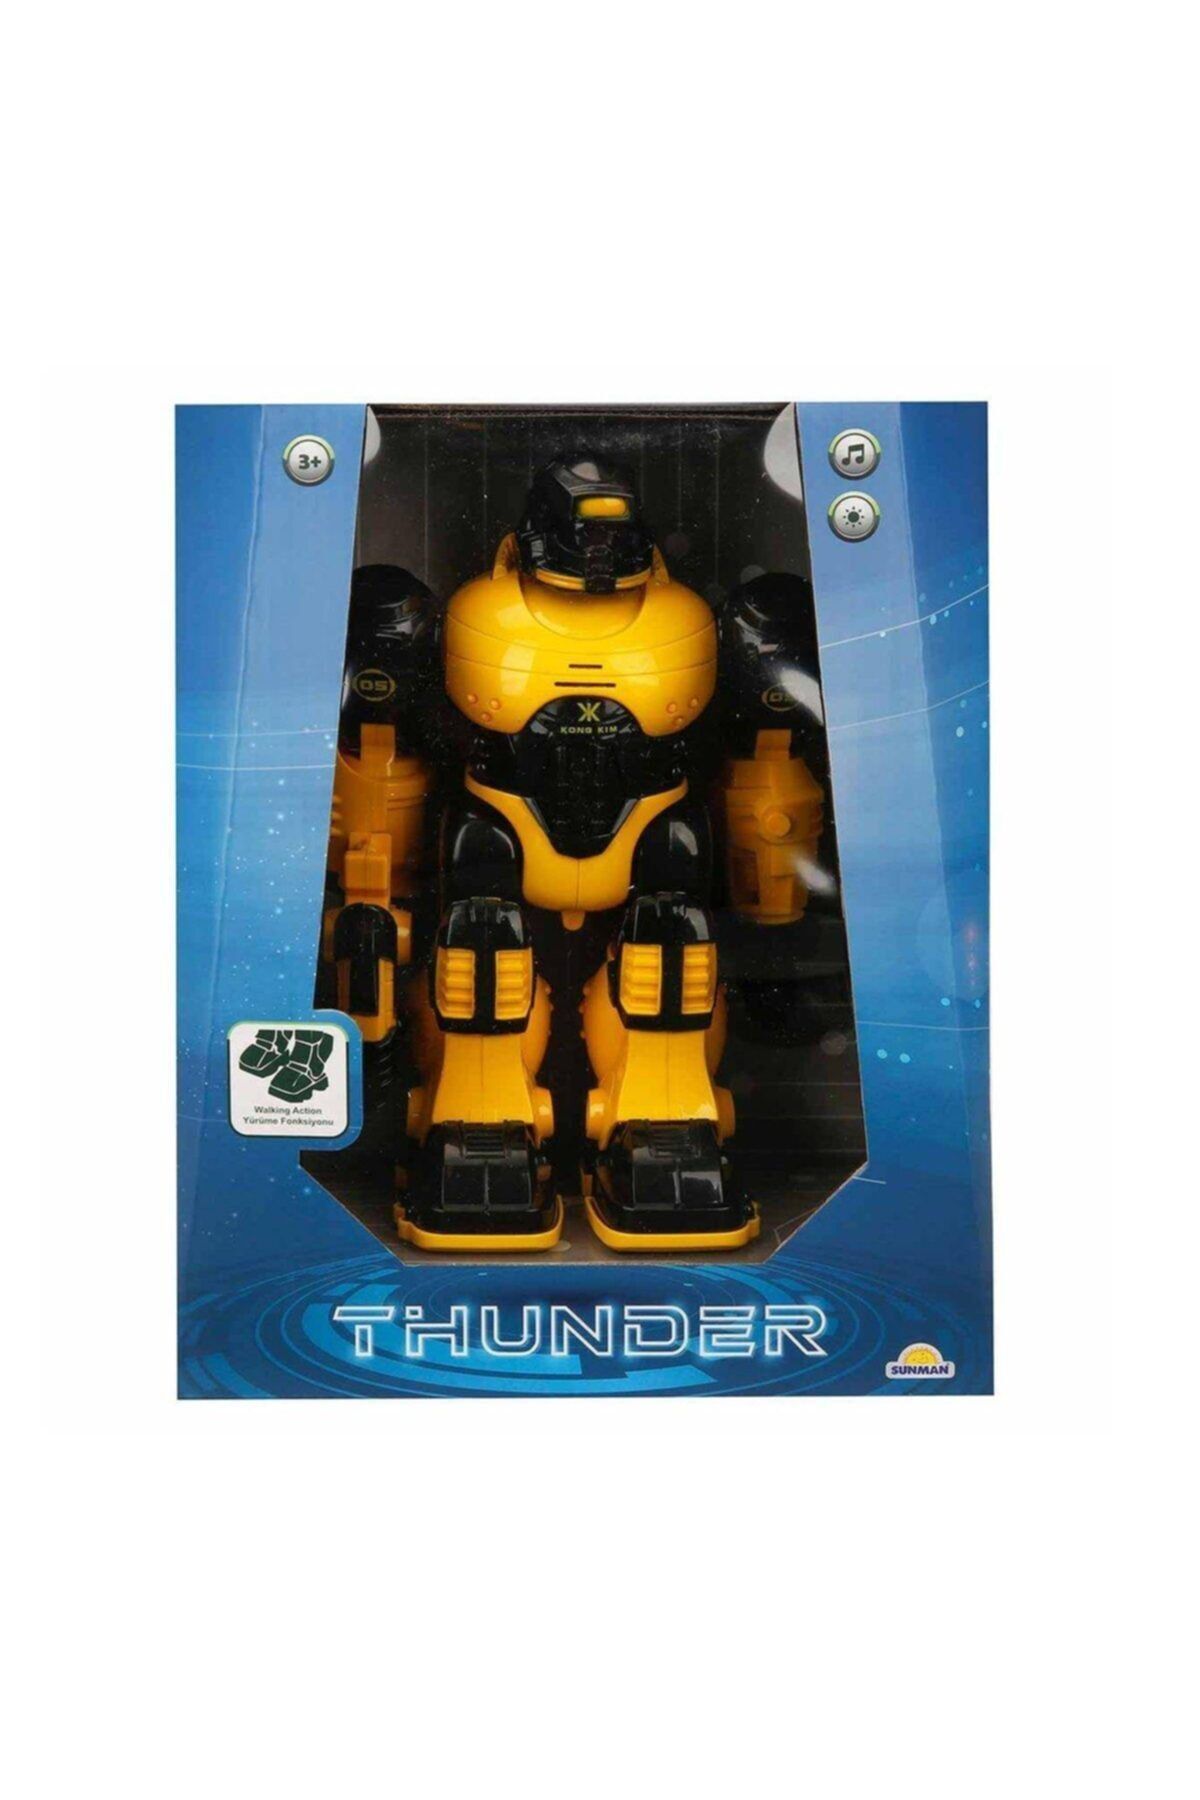 Sunman Marka: 2388 , Thunderbolt Sesli Ve Işıklı Robot 25 Cm Kategori: Akıllı Robotlar